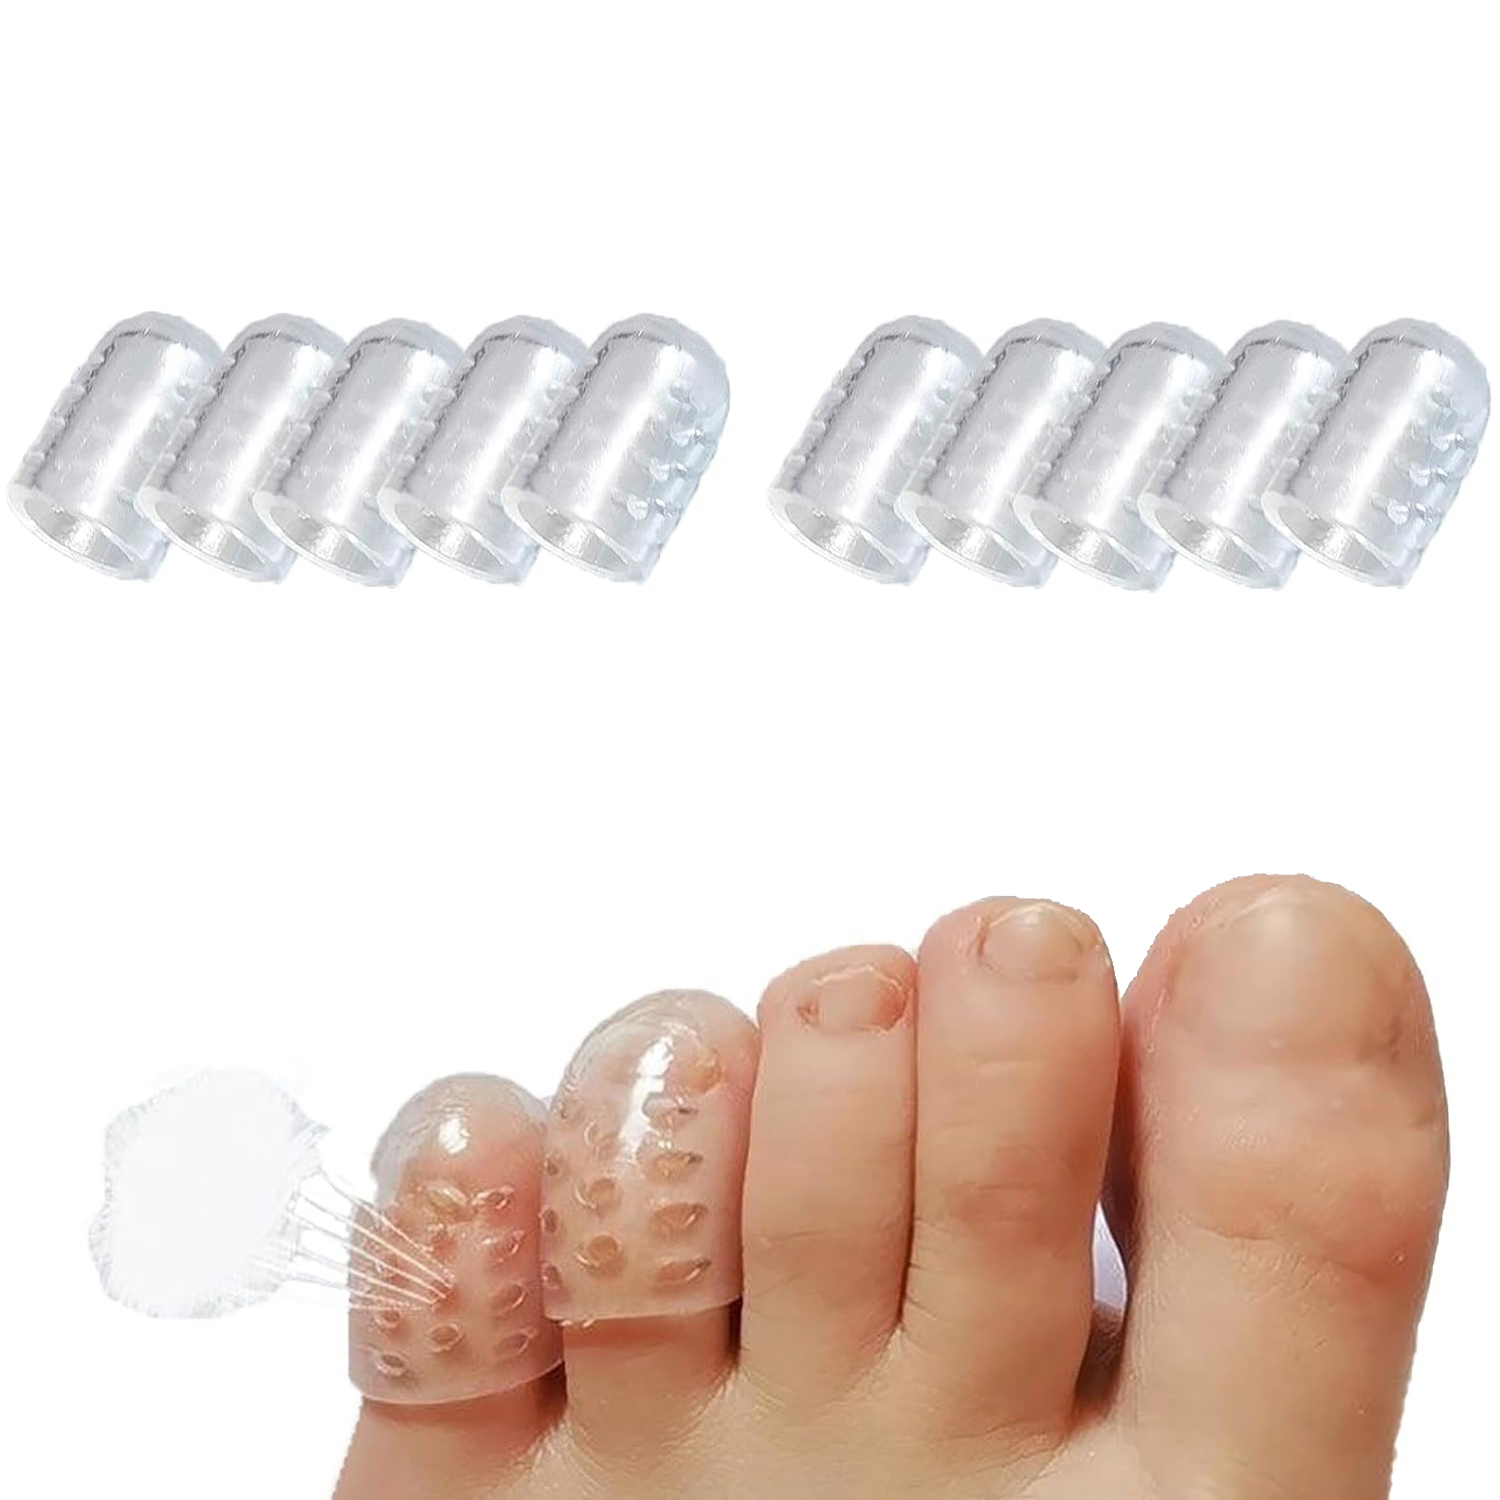  Protectores de dedos de silicona para dedos, mangas de gel,  tubos de dedos que ayudan a amortiguar y reducir el dolor de callos,  ampollas y uñas encarnadas : Salud y Hogar